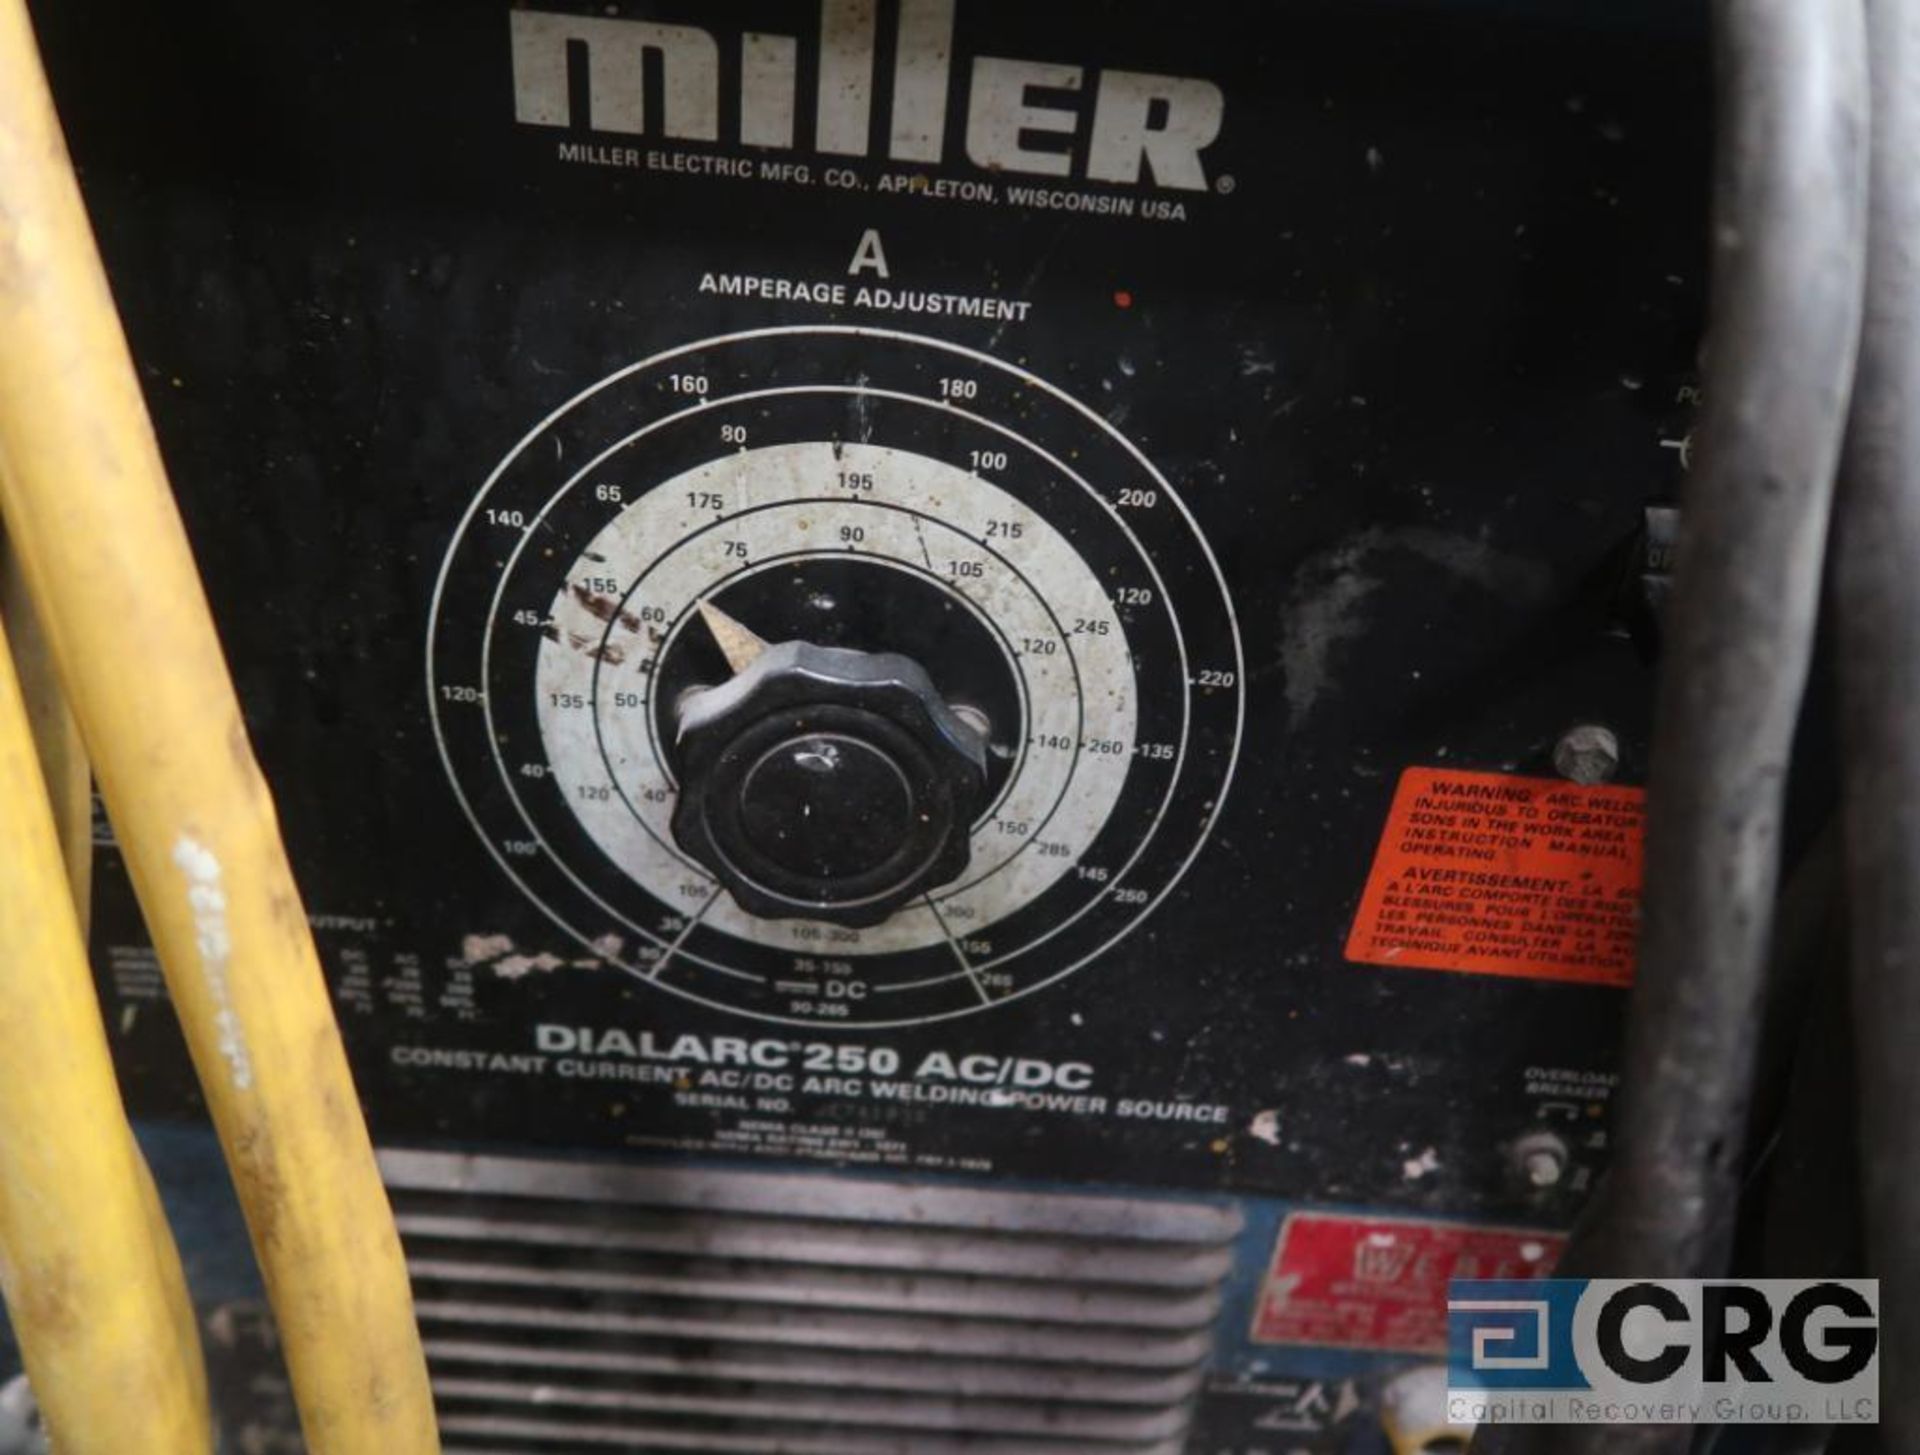 Miller Dialarc 250 welder power source on wheels, s/n JE741935 (Forklift Shop) - Image 2 of 2